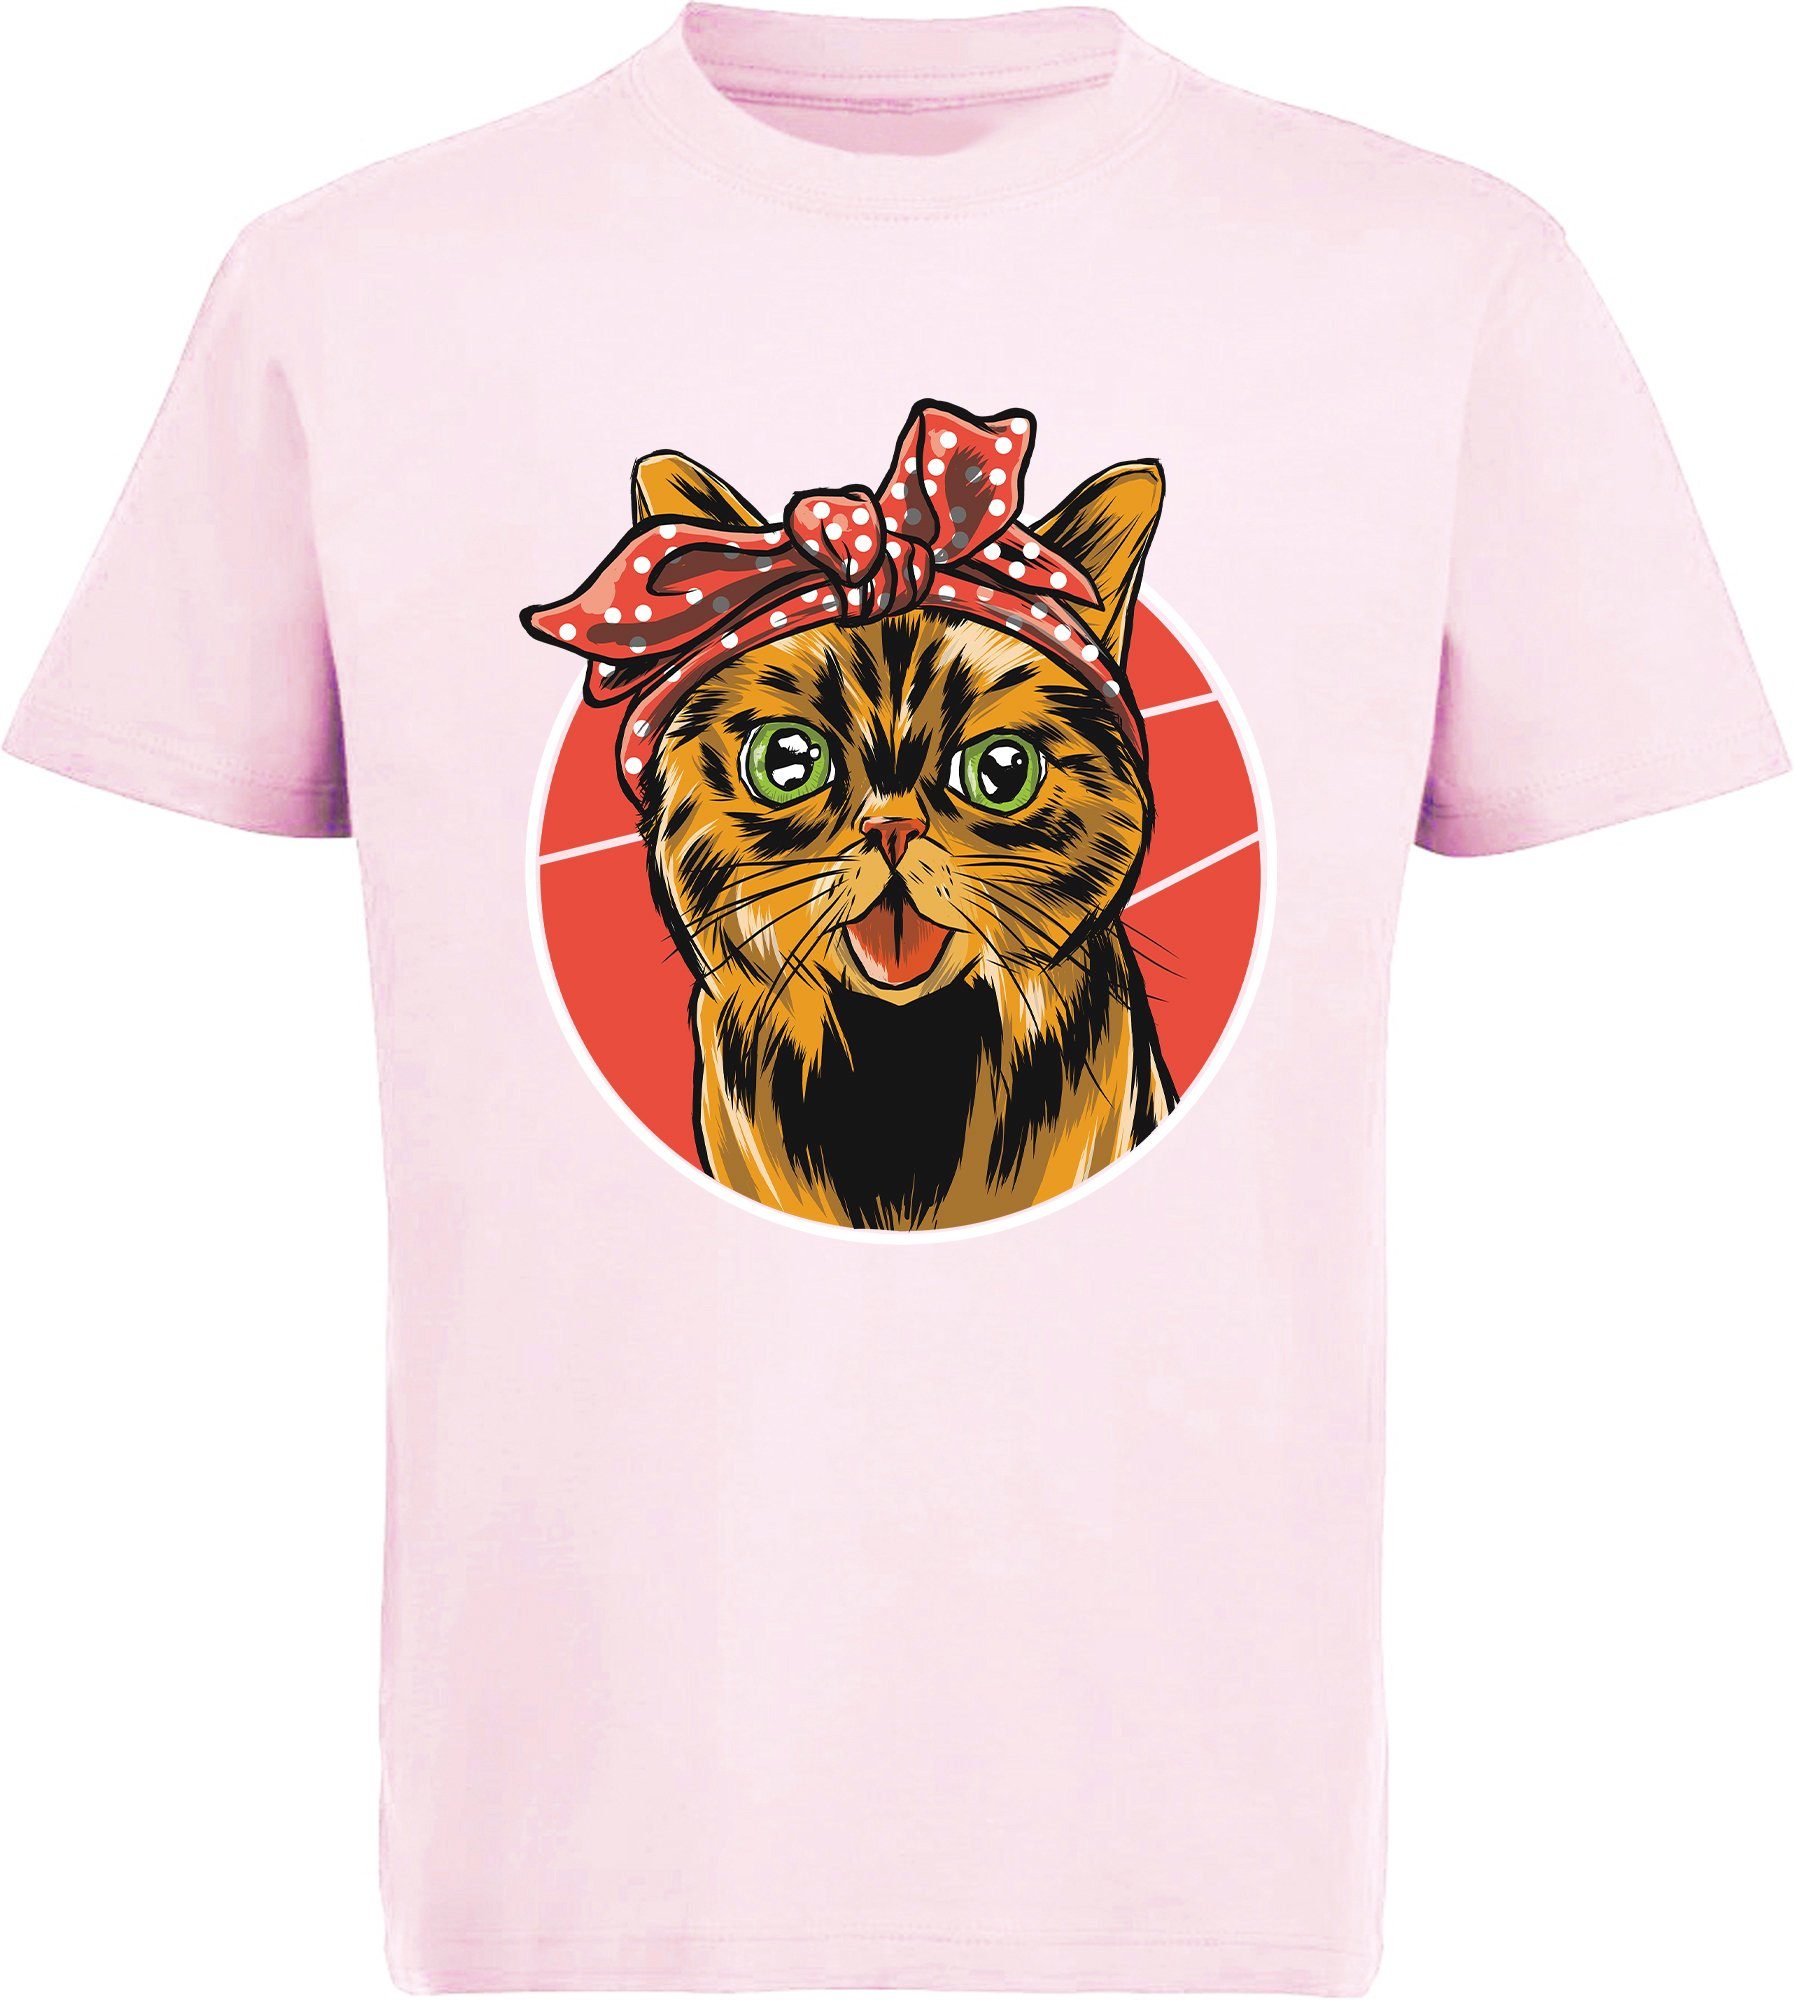 MyDesign24 Print-Shirt Mädchen mit T-Shirt rot, weiß, Kinder schwarz, i103 bedrucktes rosa, mit Katze Katze, Schleife Baumwollshirt